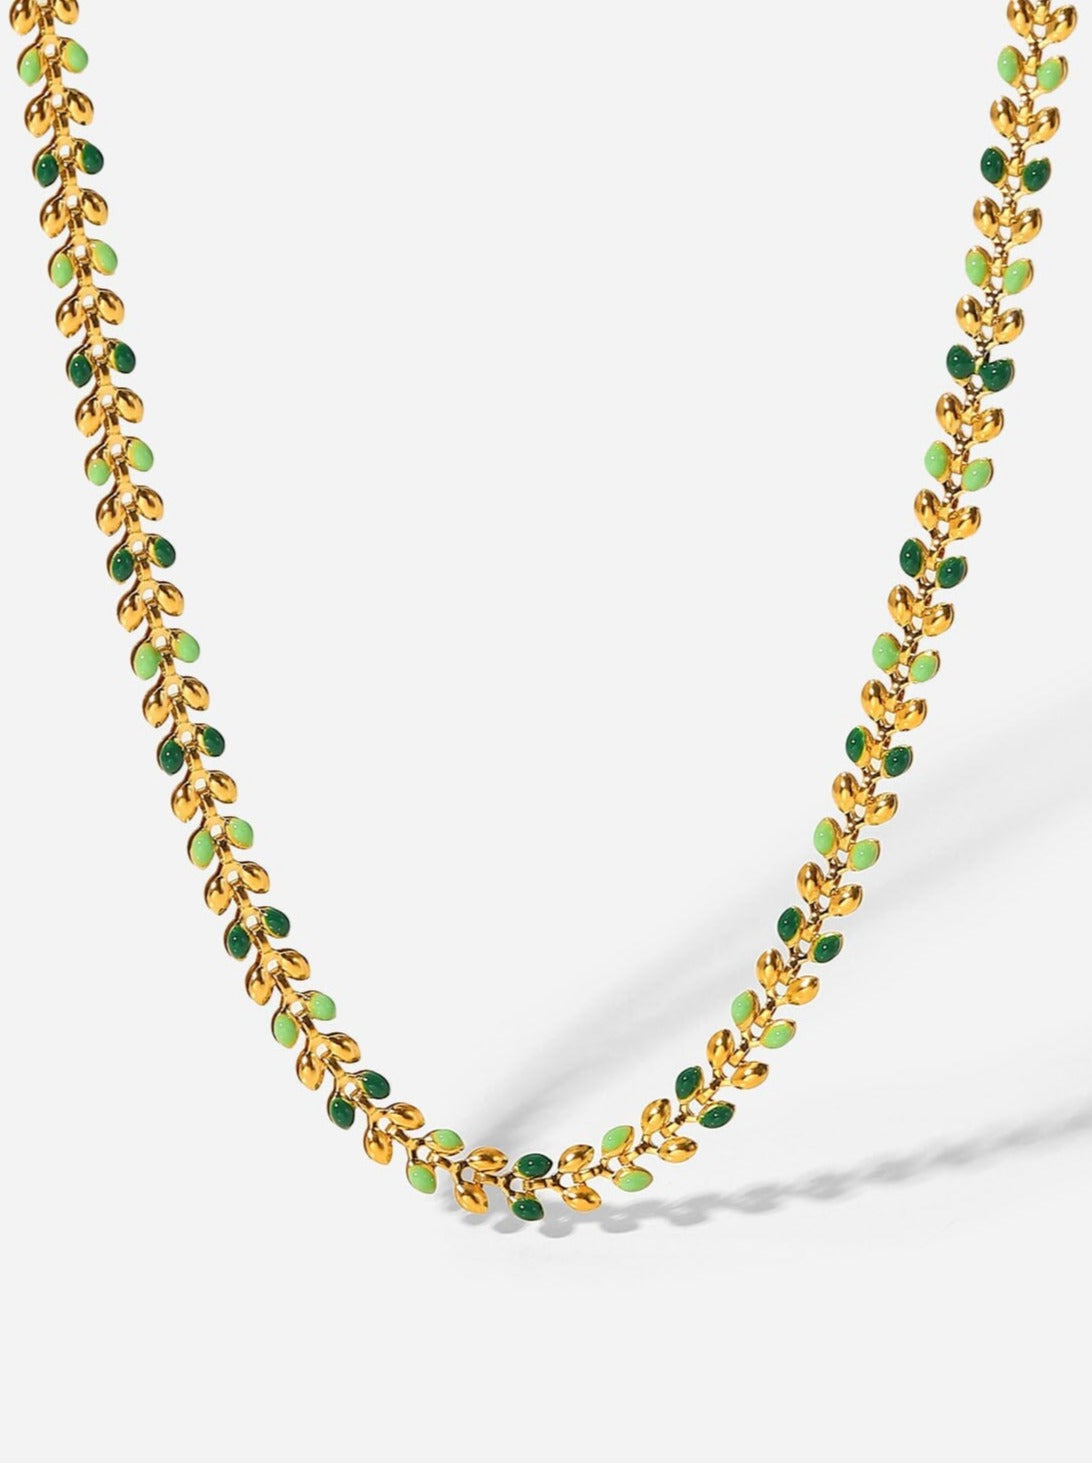 18K Gold Plated Olive Leaf Necklace PinchBox 